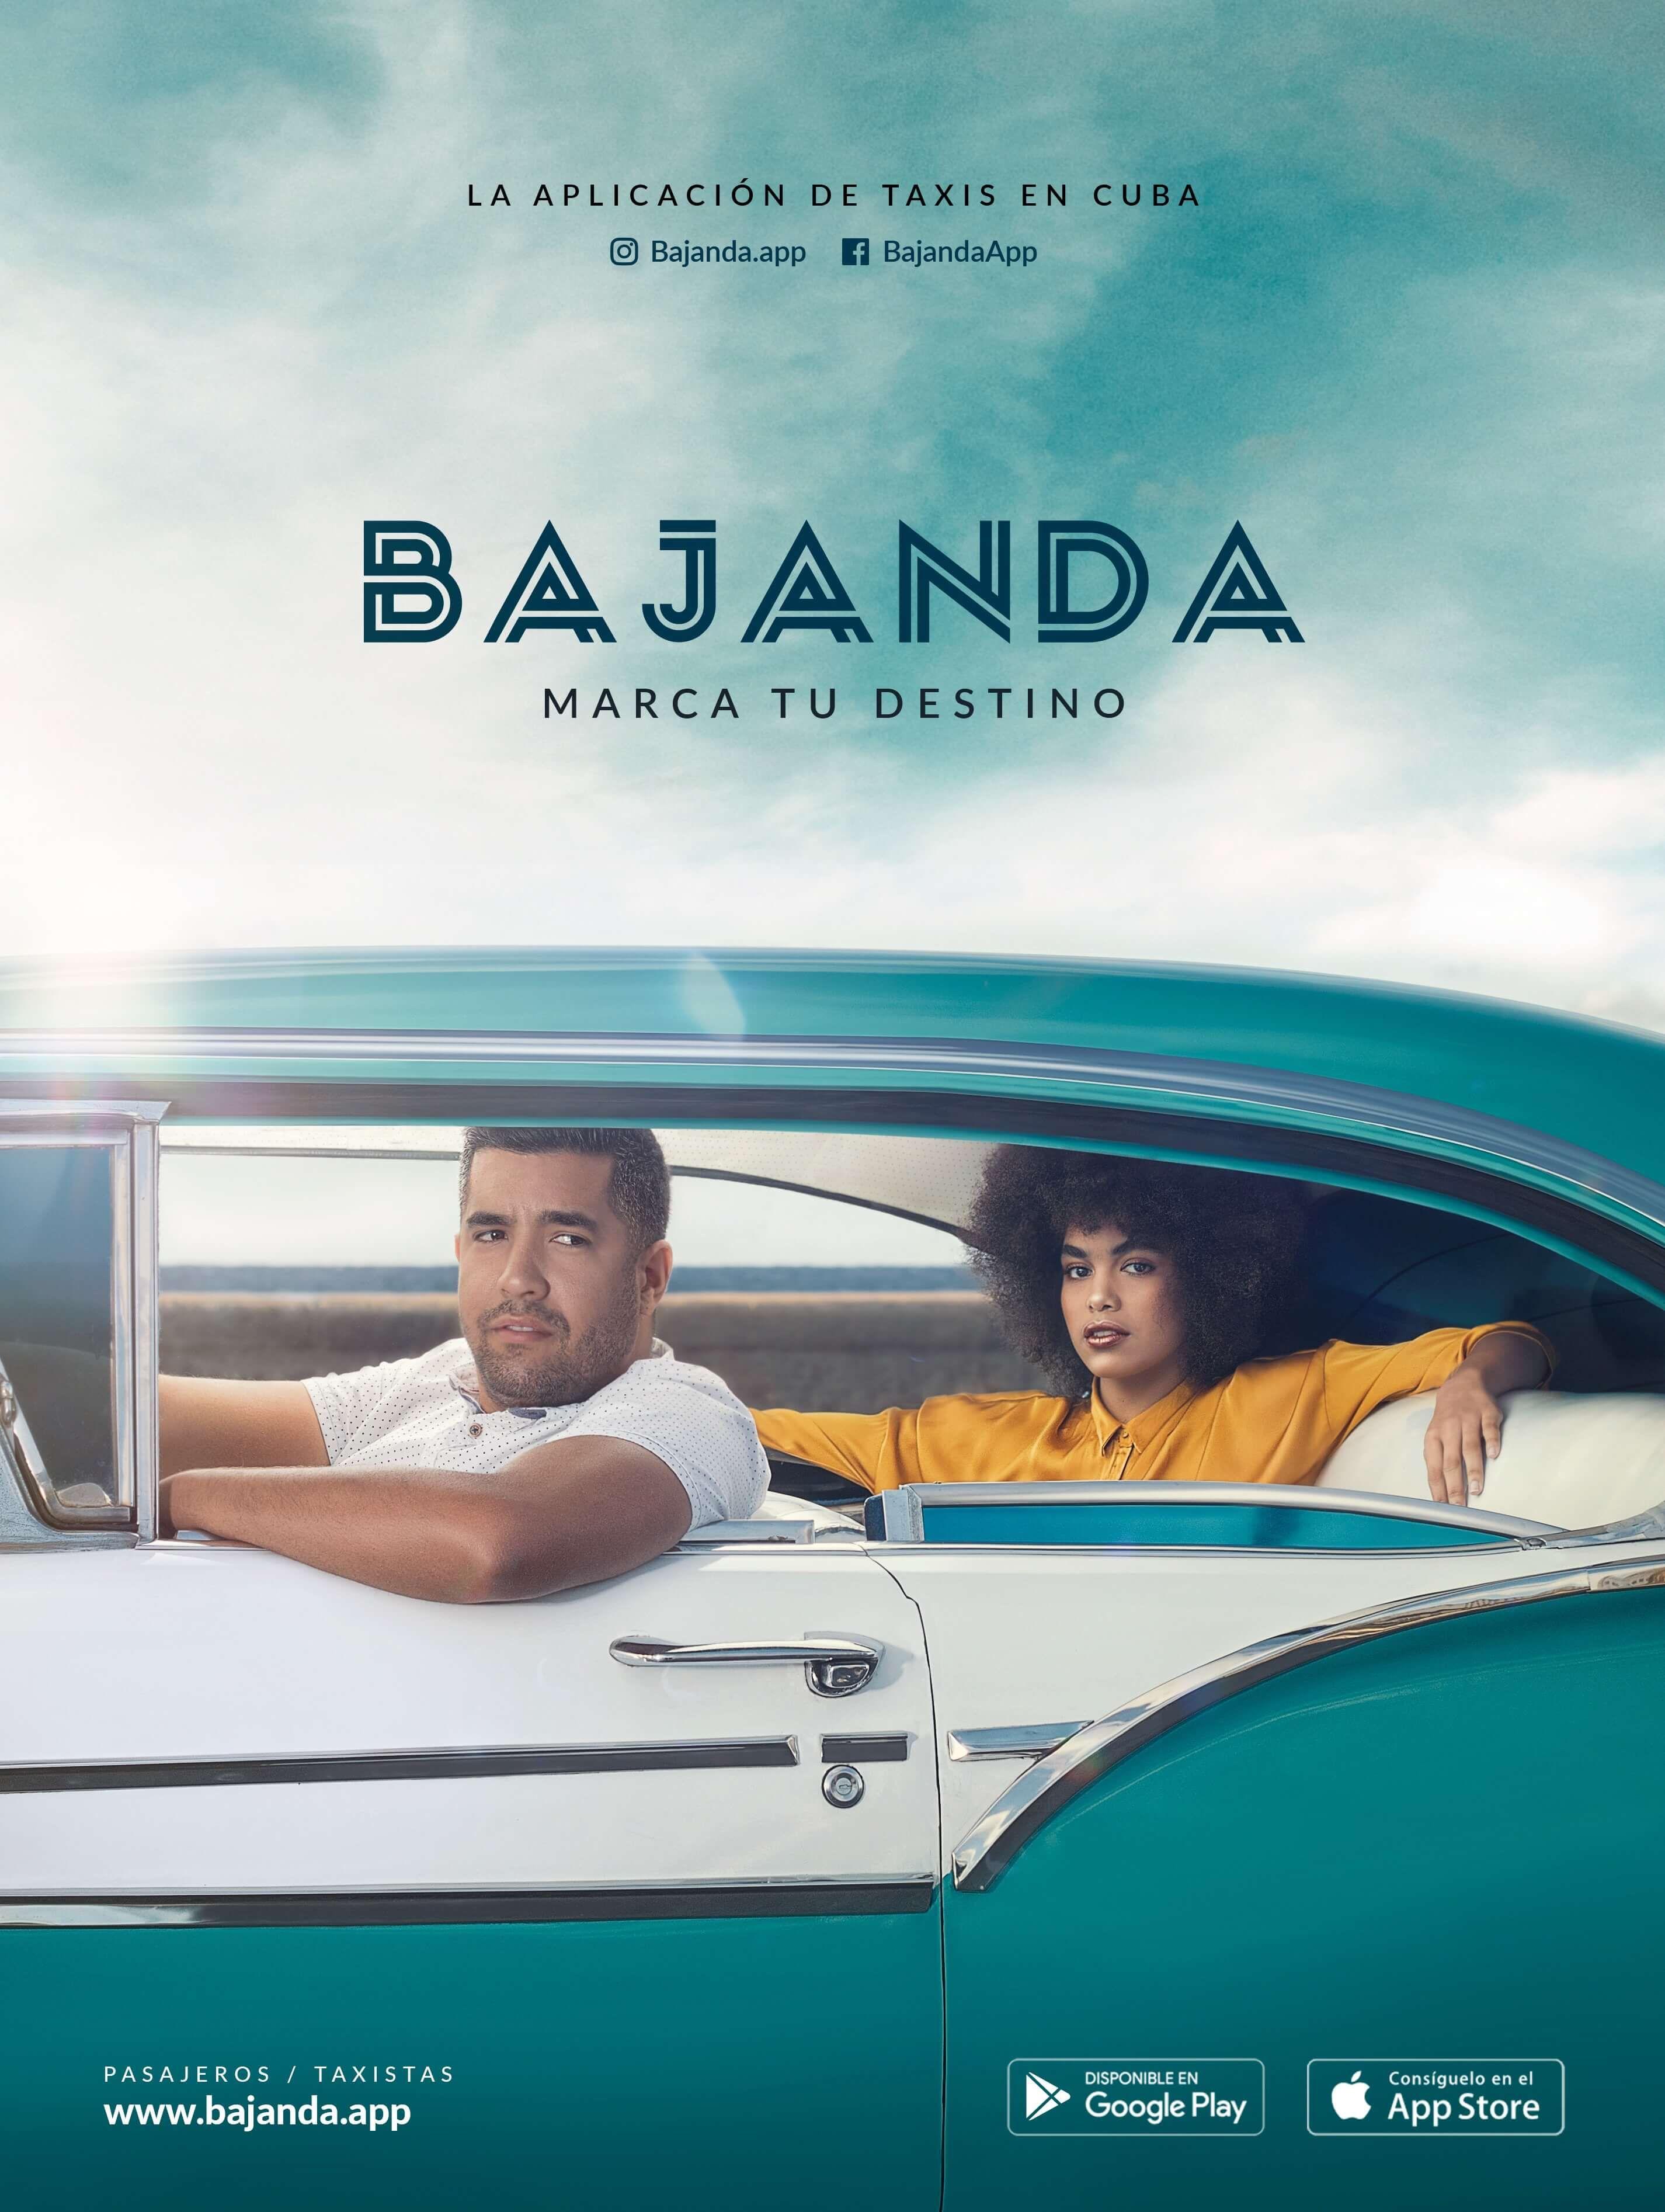 Según su fundador, Bajanda cuenta ya con más de 100 choferes afiliados. Foto promocional de Bajanda.